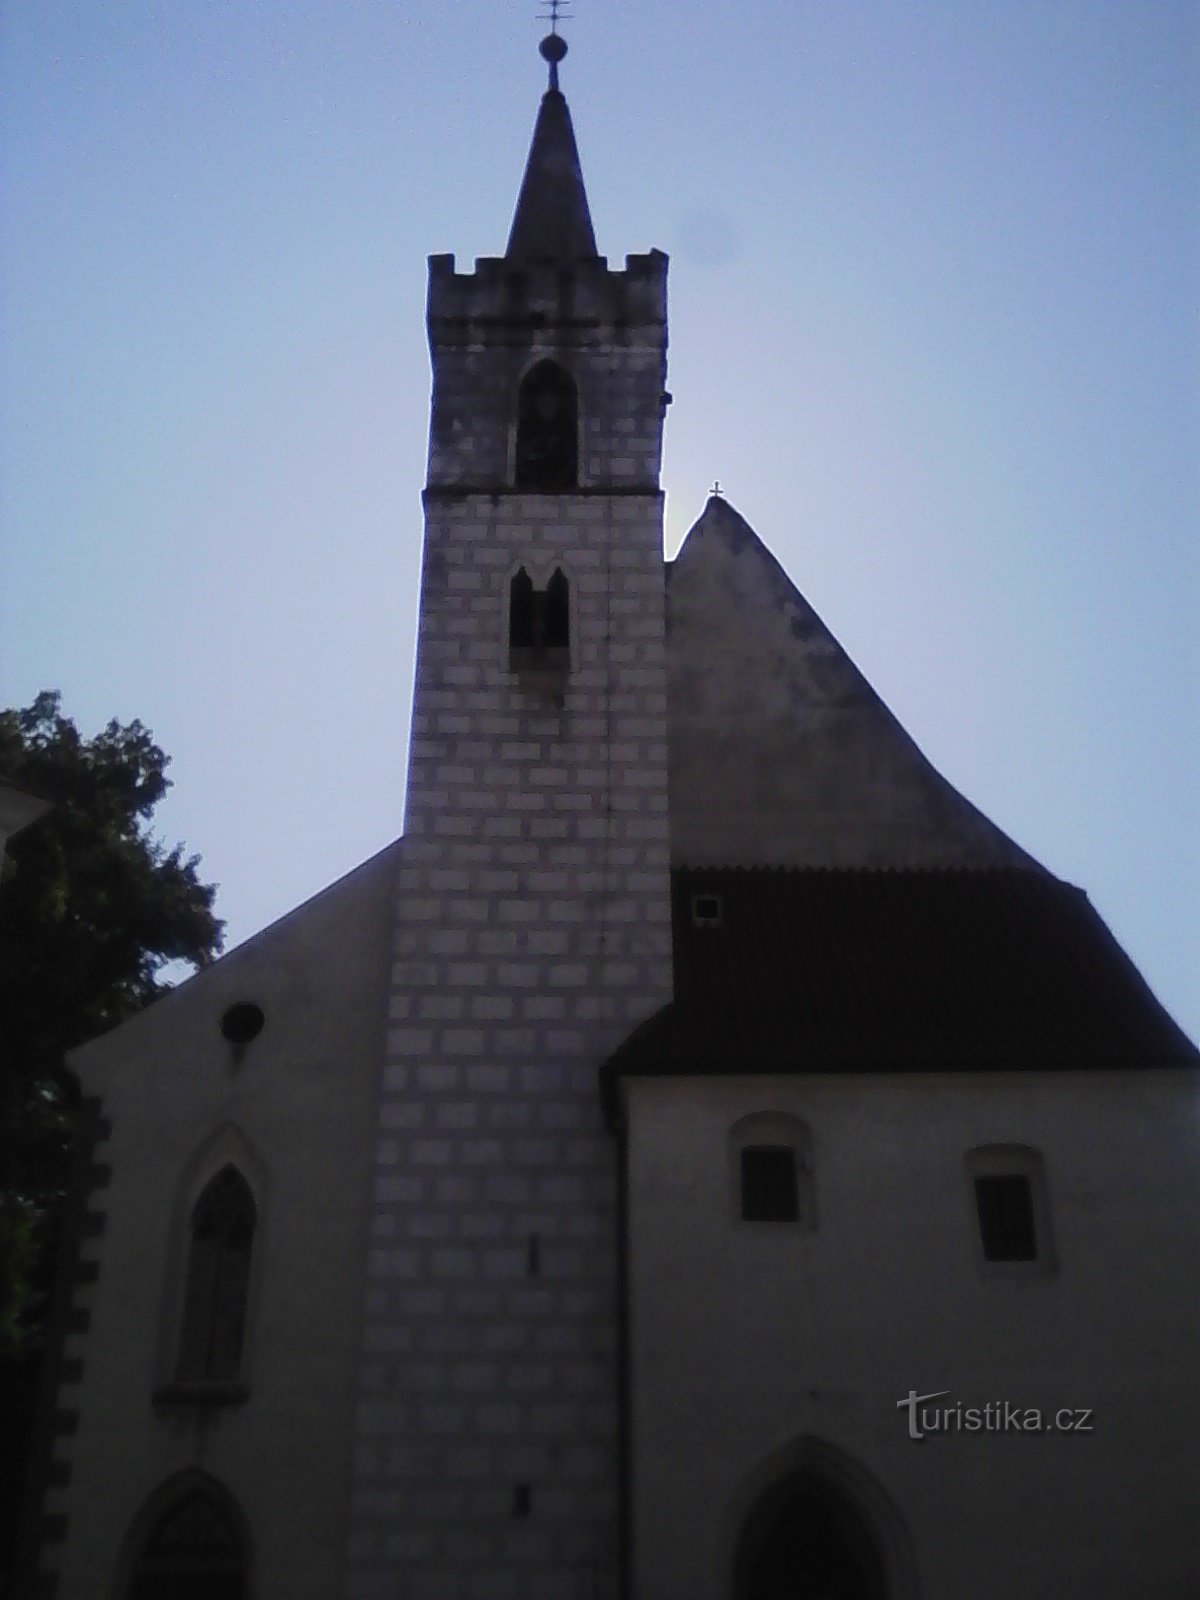 2. Nhà thờ Thánh Martin ở Sedlčany được xây dựng theo phong cách Gothic thời kỳ đầu. Usuzu